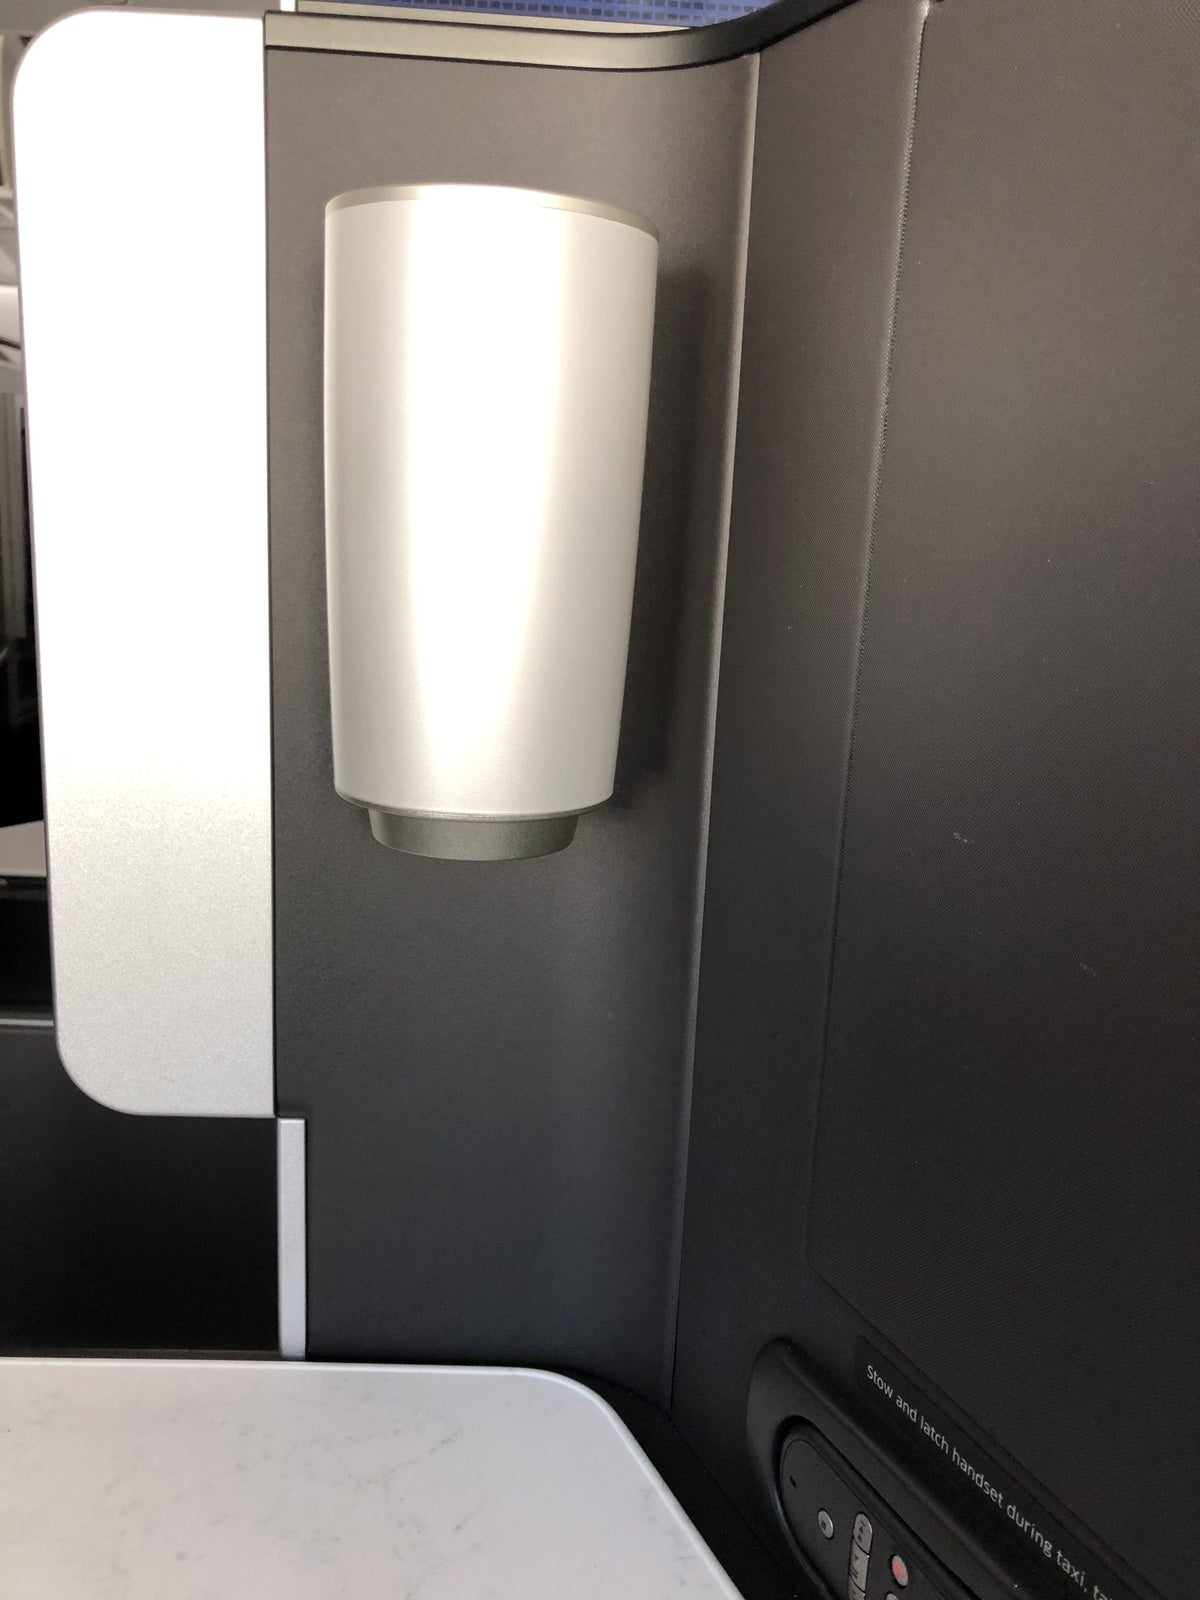 United Polaris 787-10 seat lamp